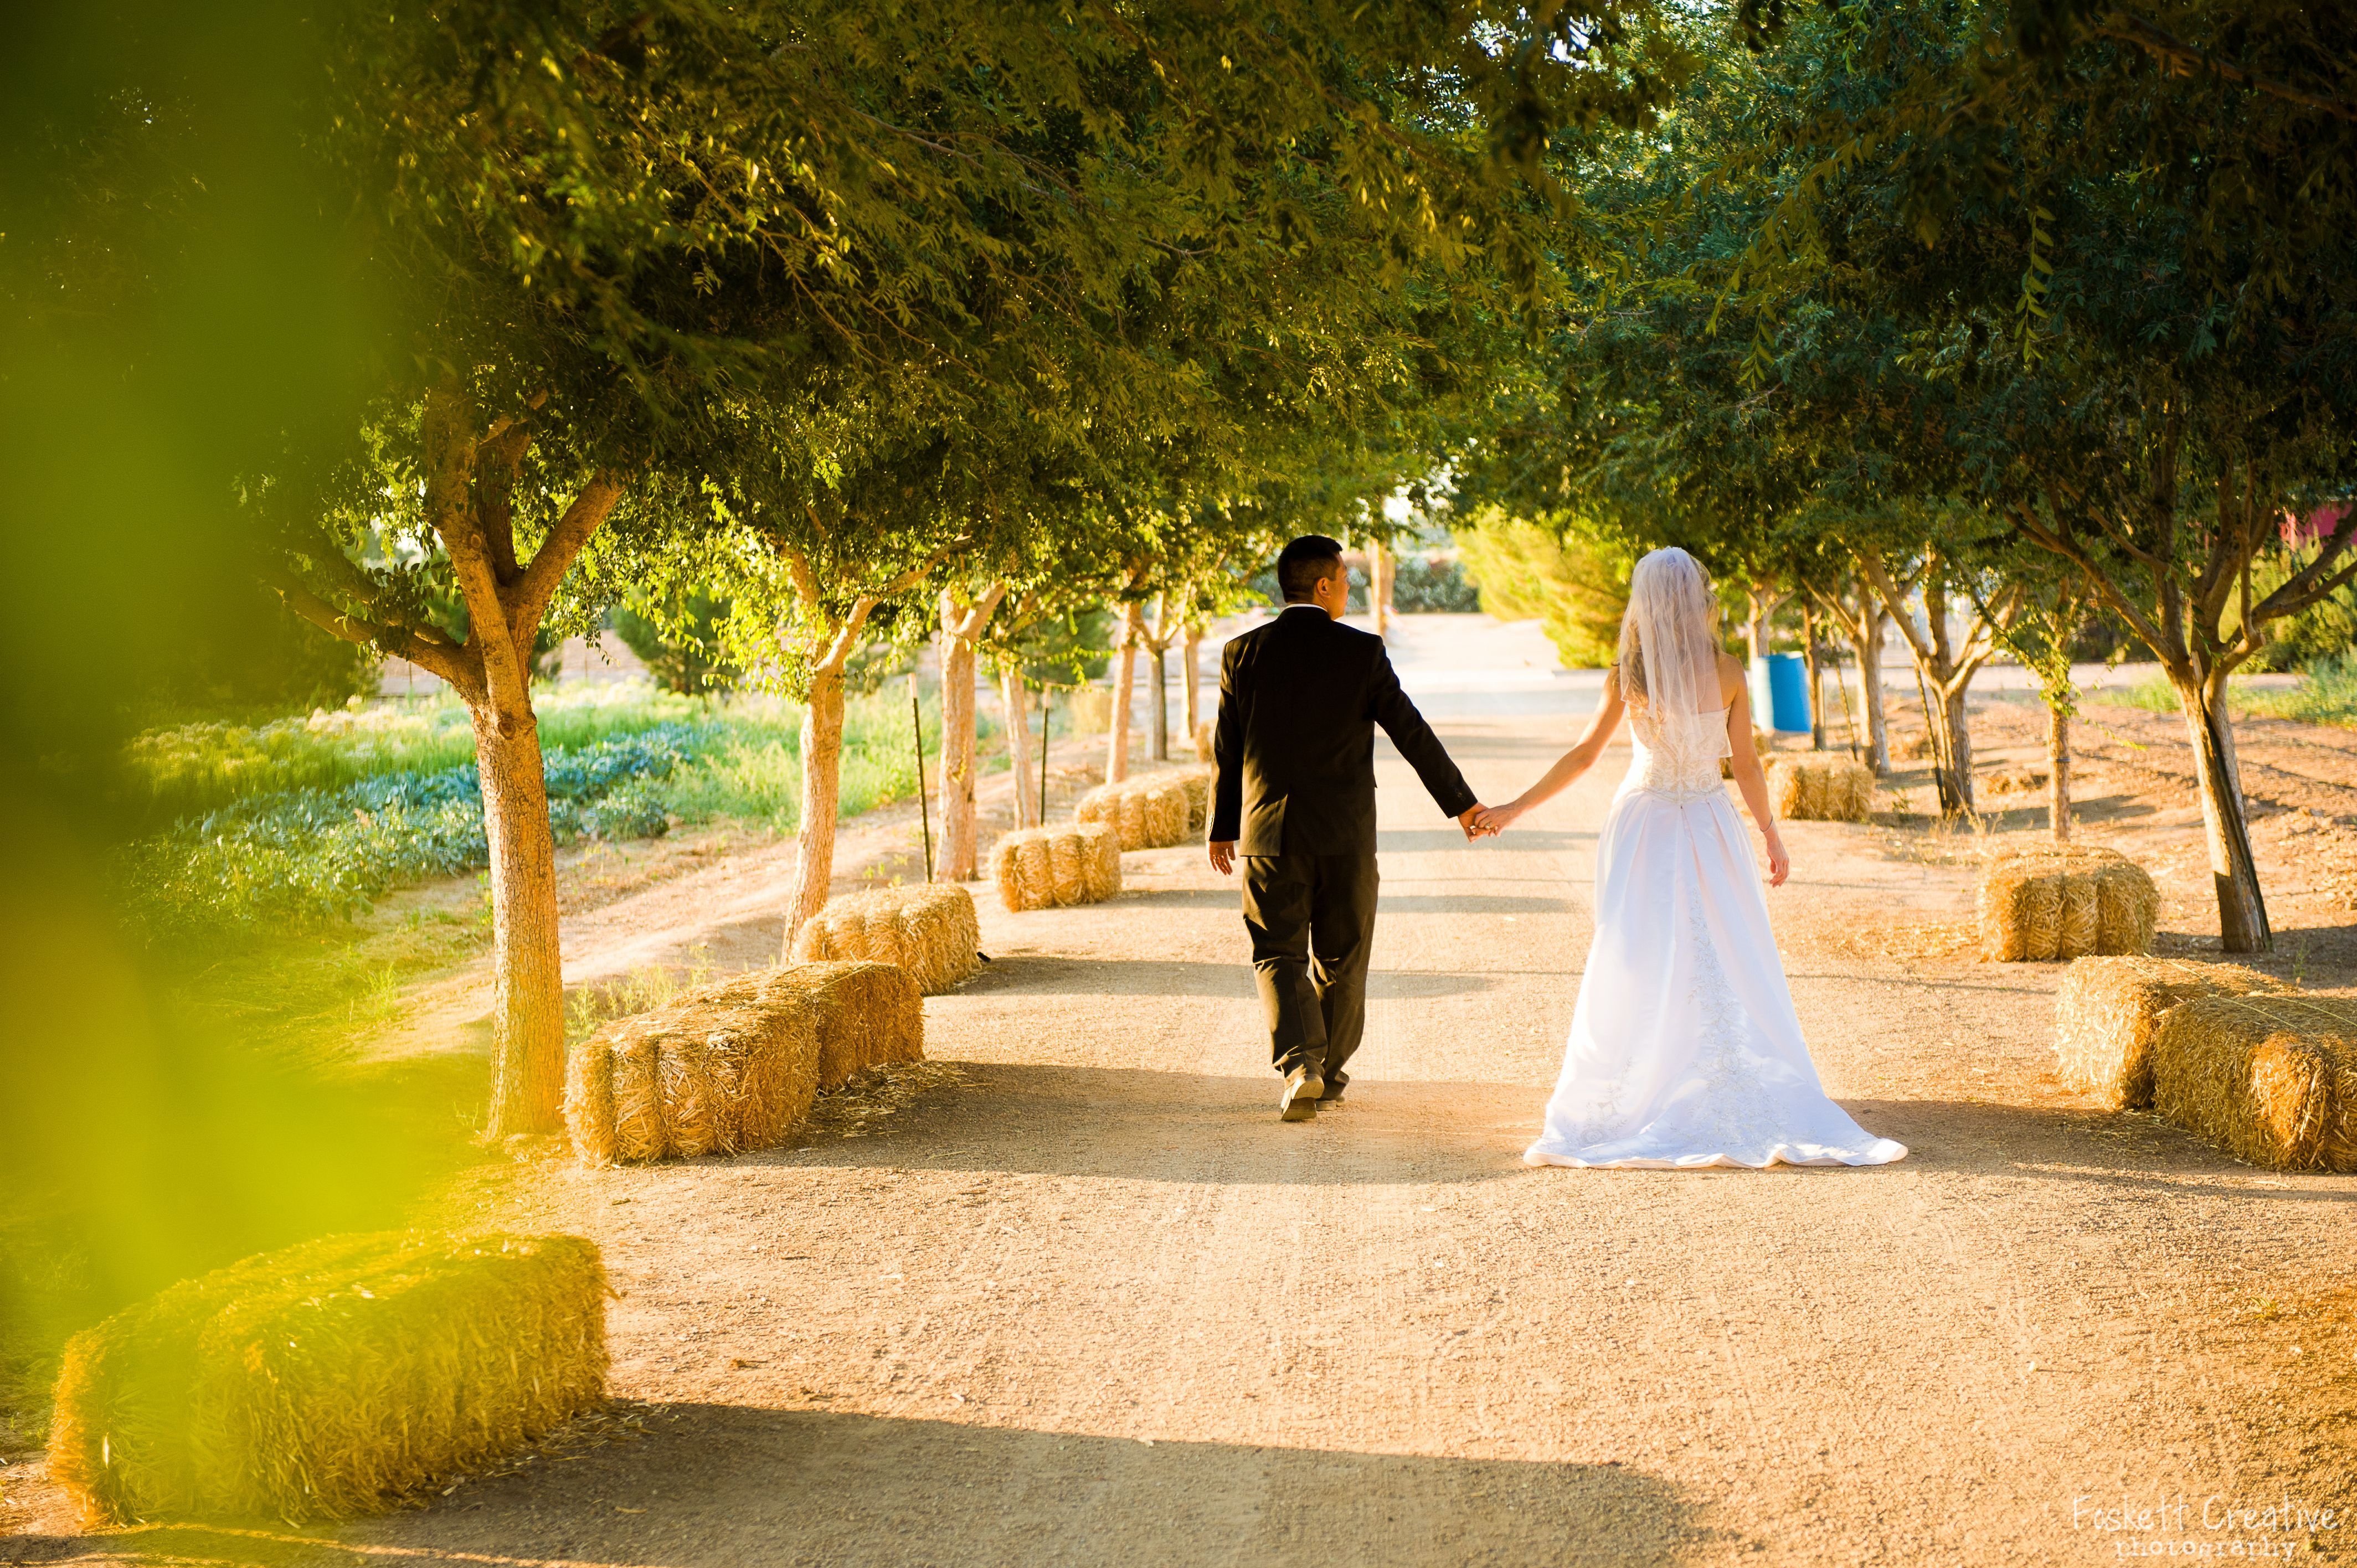 Будем свадьбу гулять. Свадебная прогулка. Свадьба мечты. Фотосессия свадебной прогулки в парке. Свадьба в лесу.